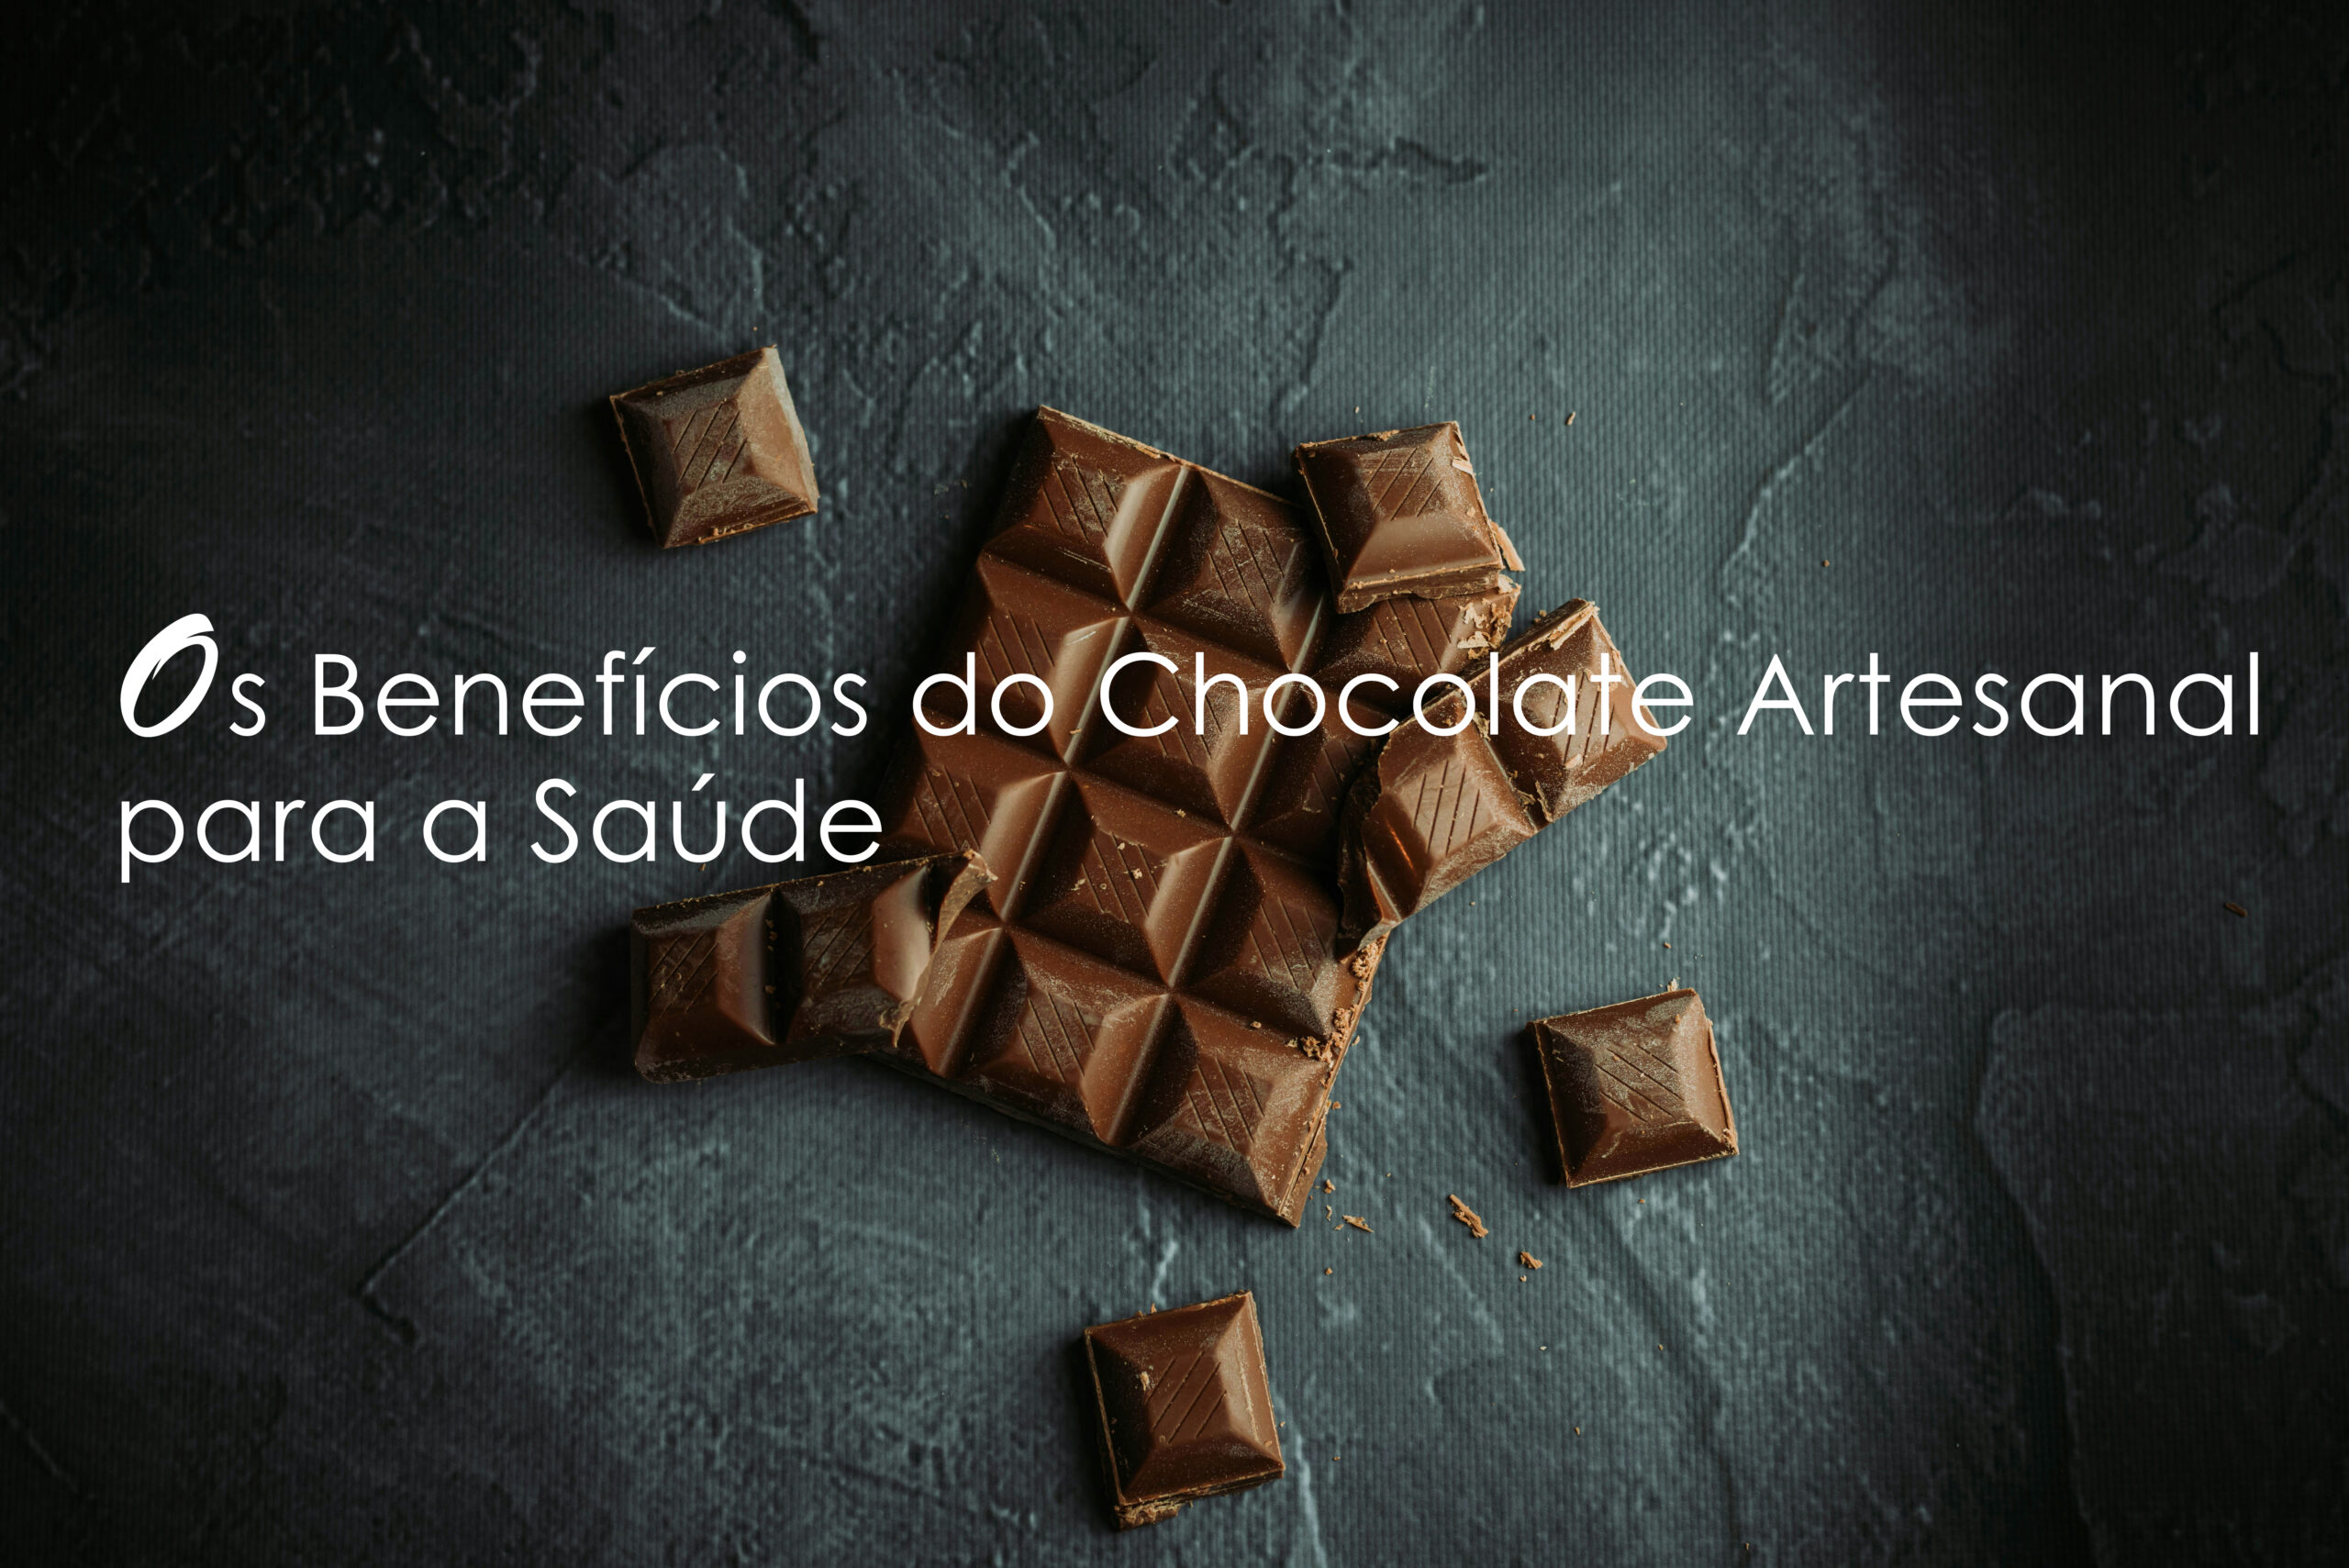 Os benefícios do chocolate artesanal para a saúde